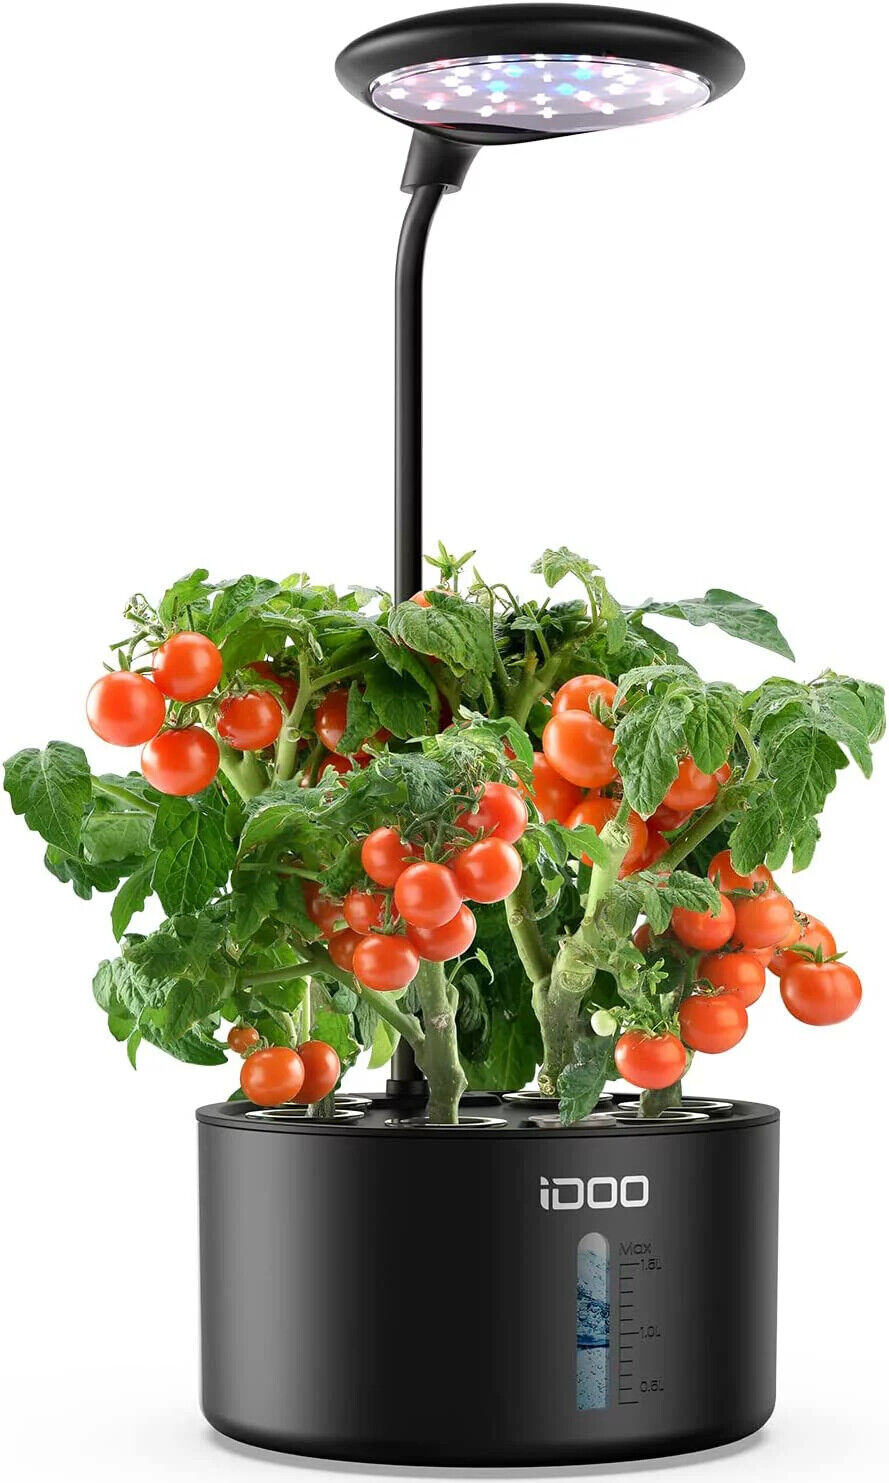 iDOO Hydroponics Growing System Indoor Garden,6 Pods,Adjustable LED